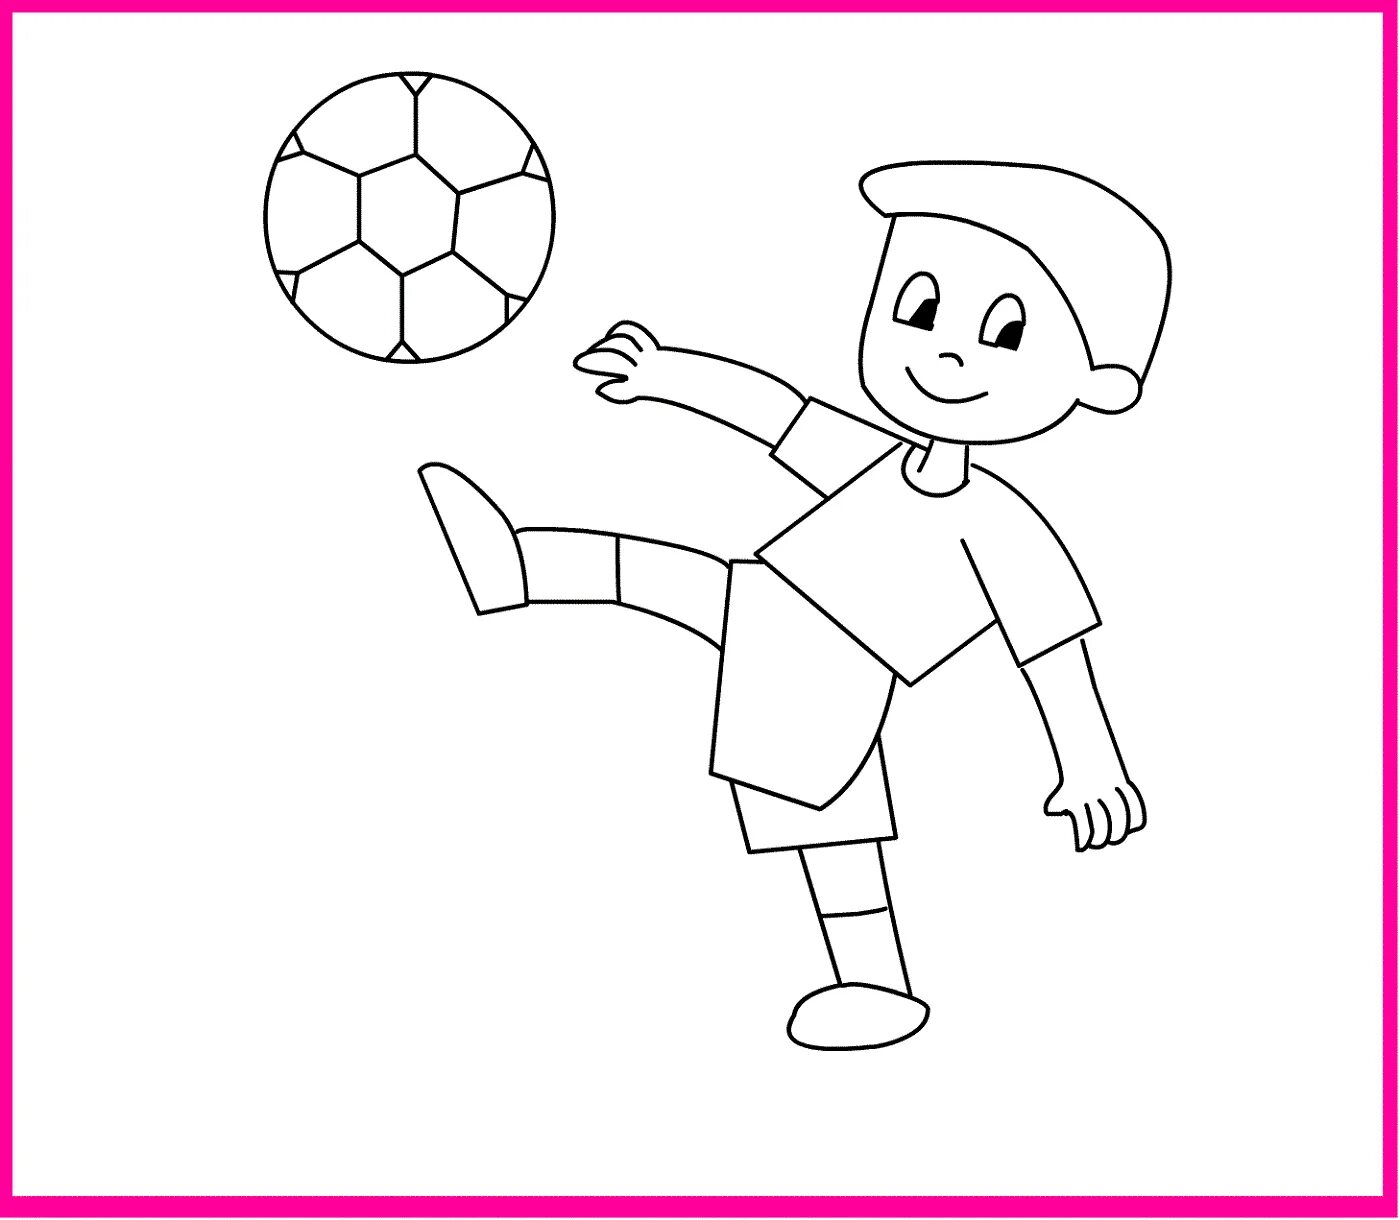 Нарисовать любые игры. Рисунок на тему футбол. Рисунки на футбольную тему для детей. Футбол рисунок для детей. Футбол рисунок для детей лёгкий.